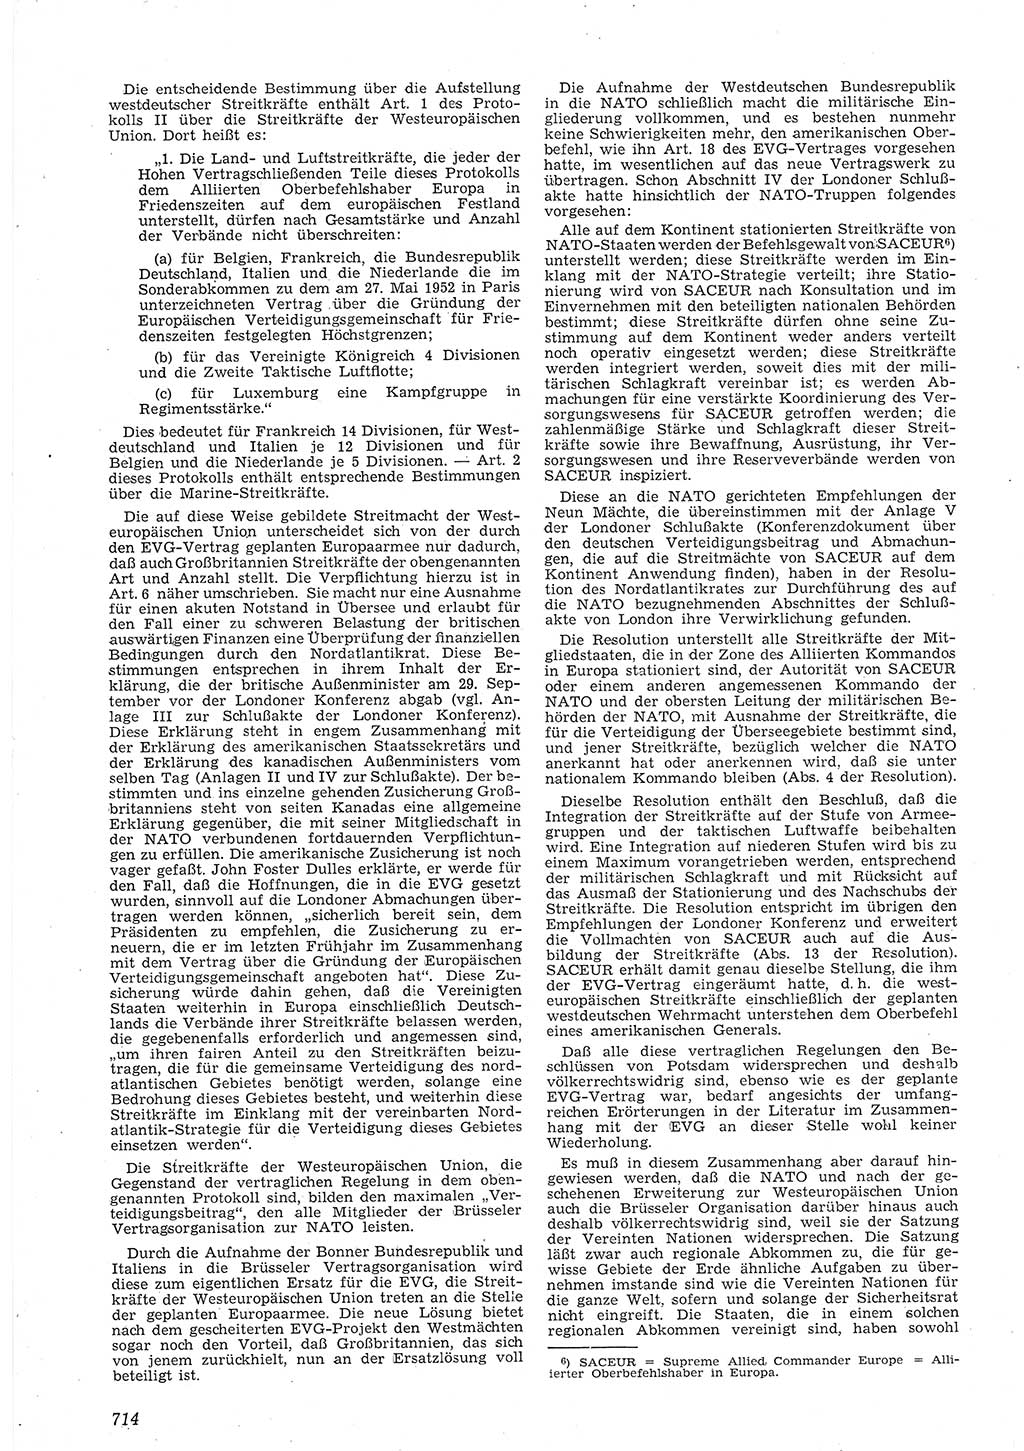 Neue Justiz (NJ), Zeitschrift für Recht und Rechtswissenschaft [Deutsche Demokratische Republik (DDR)], 8. Jahrgang 1954, Seite 714 (NJ DDR 1954, S. 714)